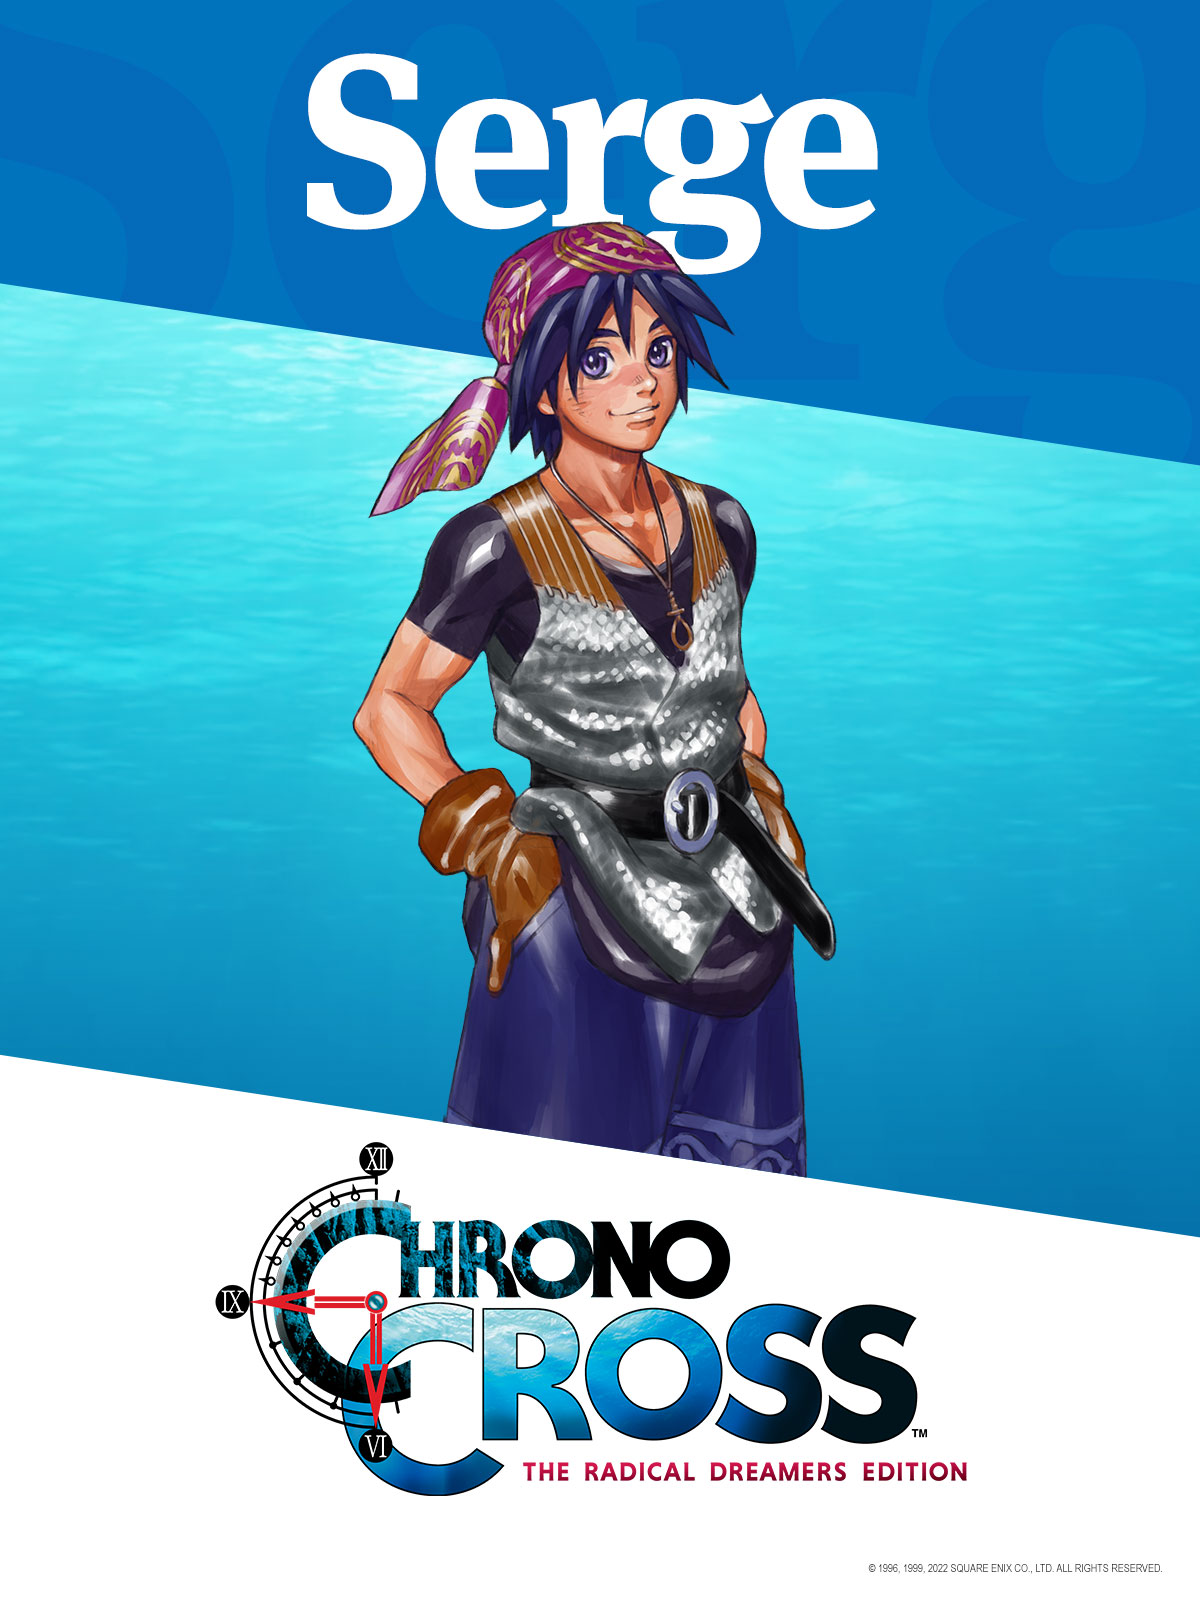 Detalhes e Chrono Cross. Detalhes são importantes. Chrono Cross